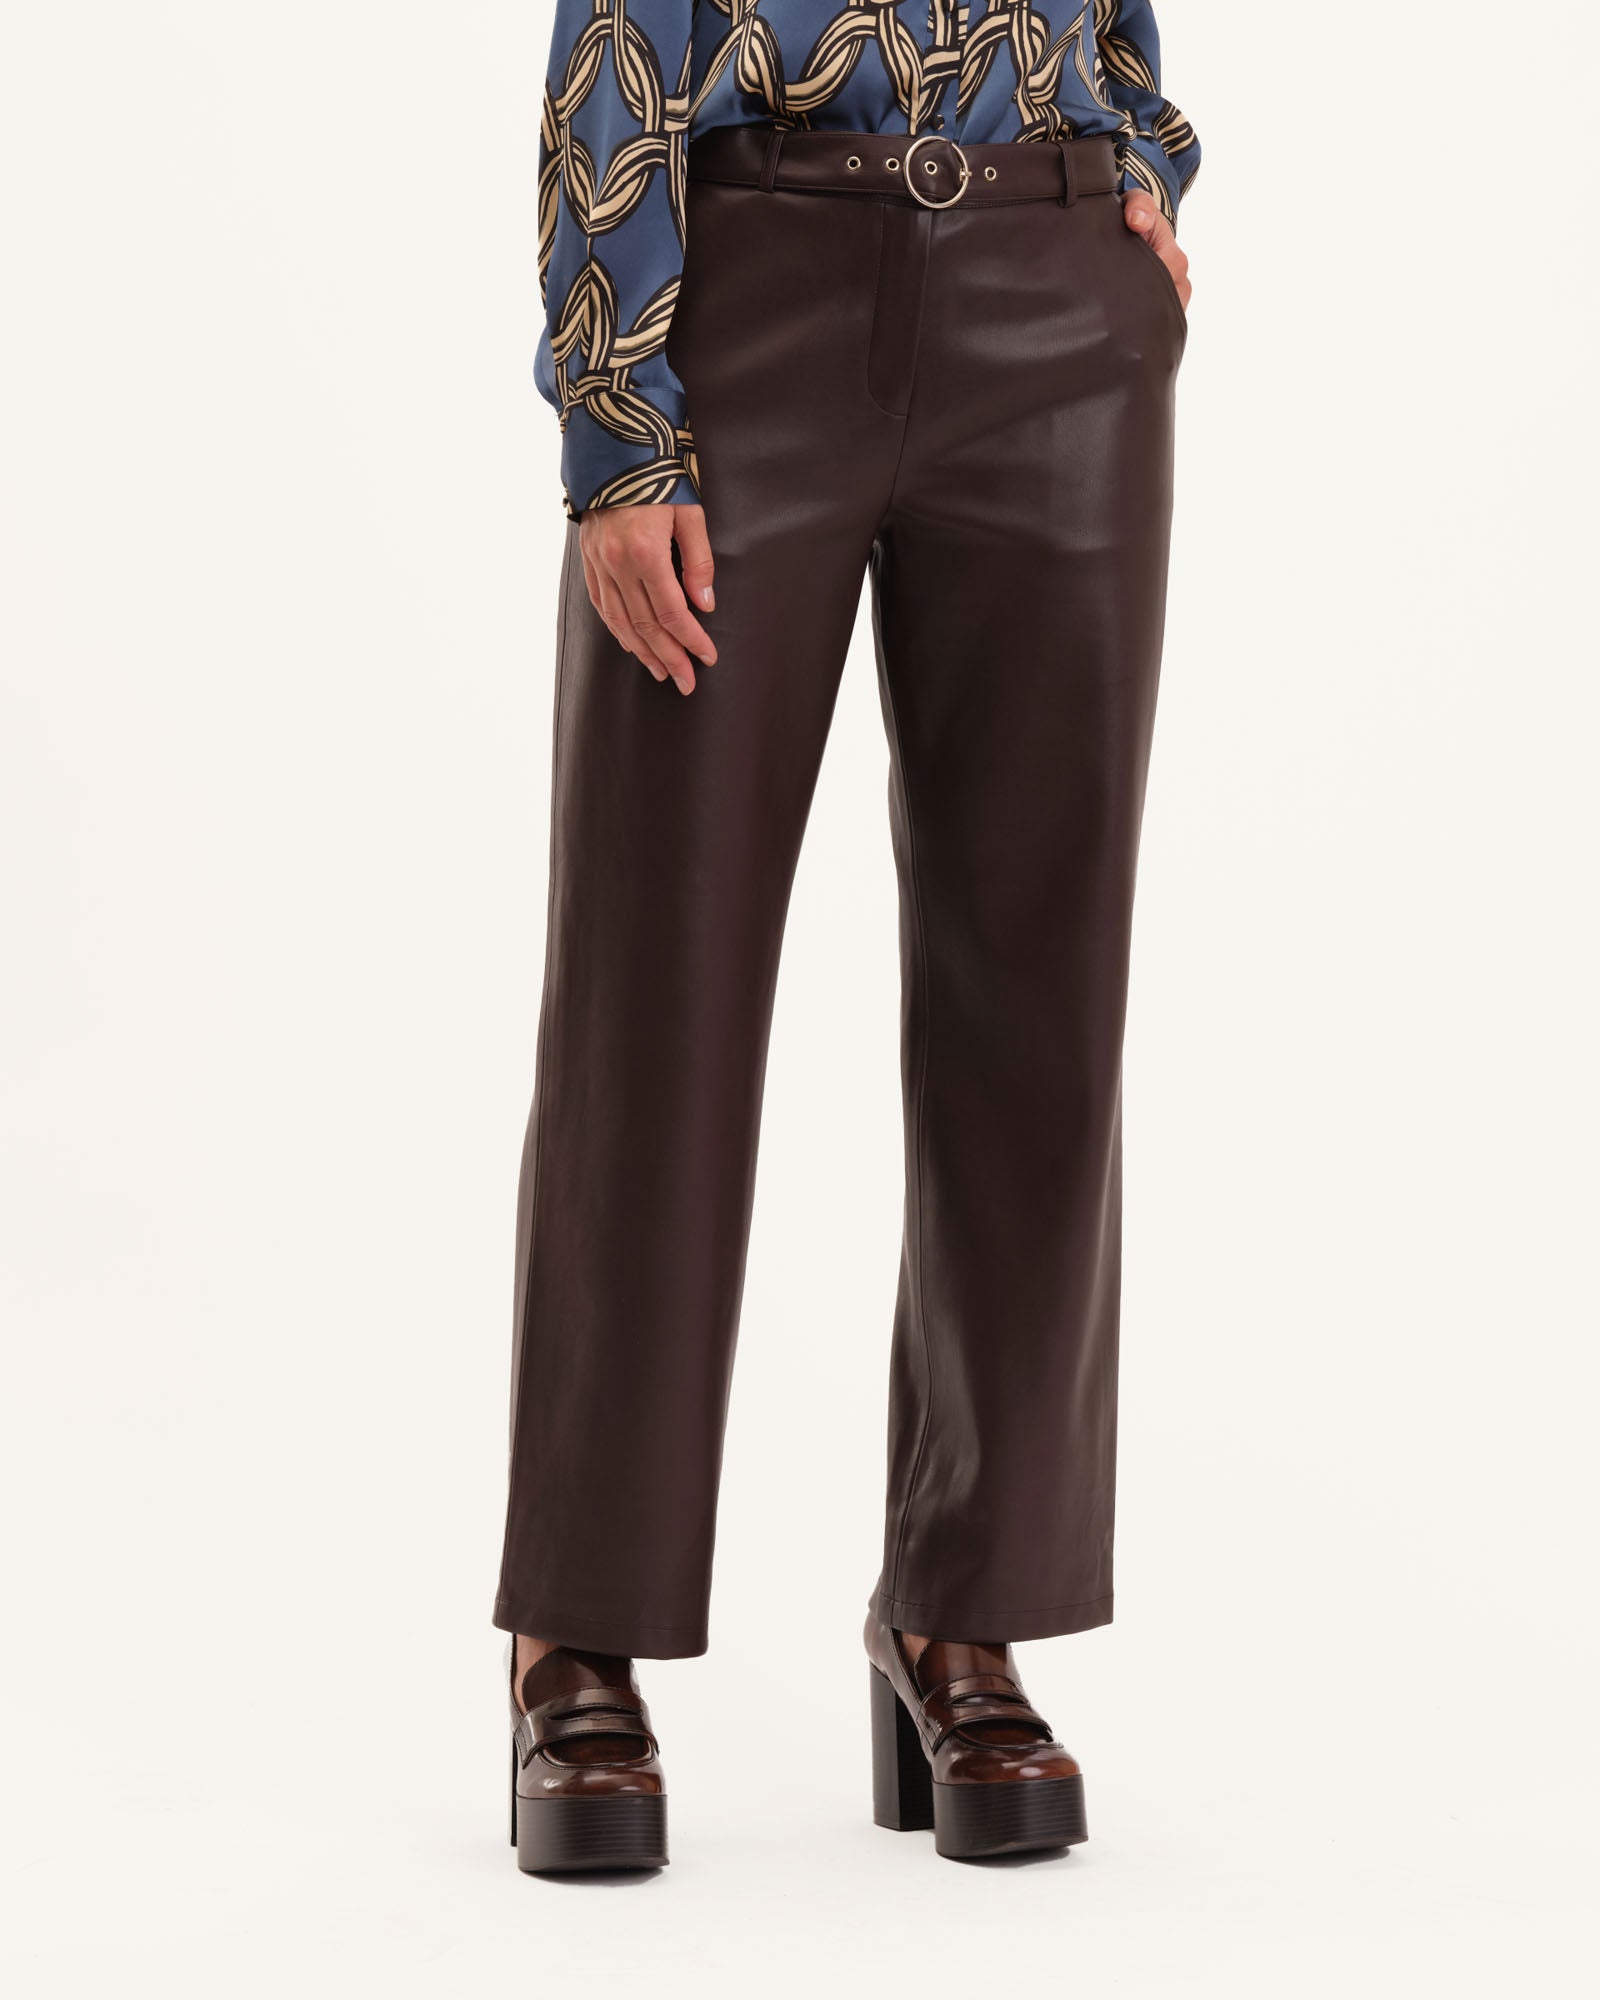 MERCER Faux Leather Pant Cognac  Women's Straight Leg Trousers